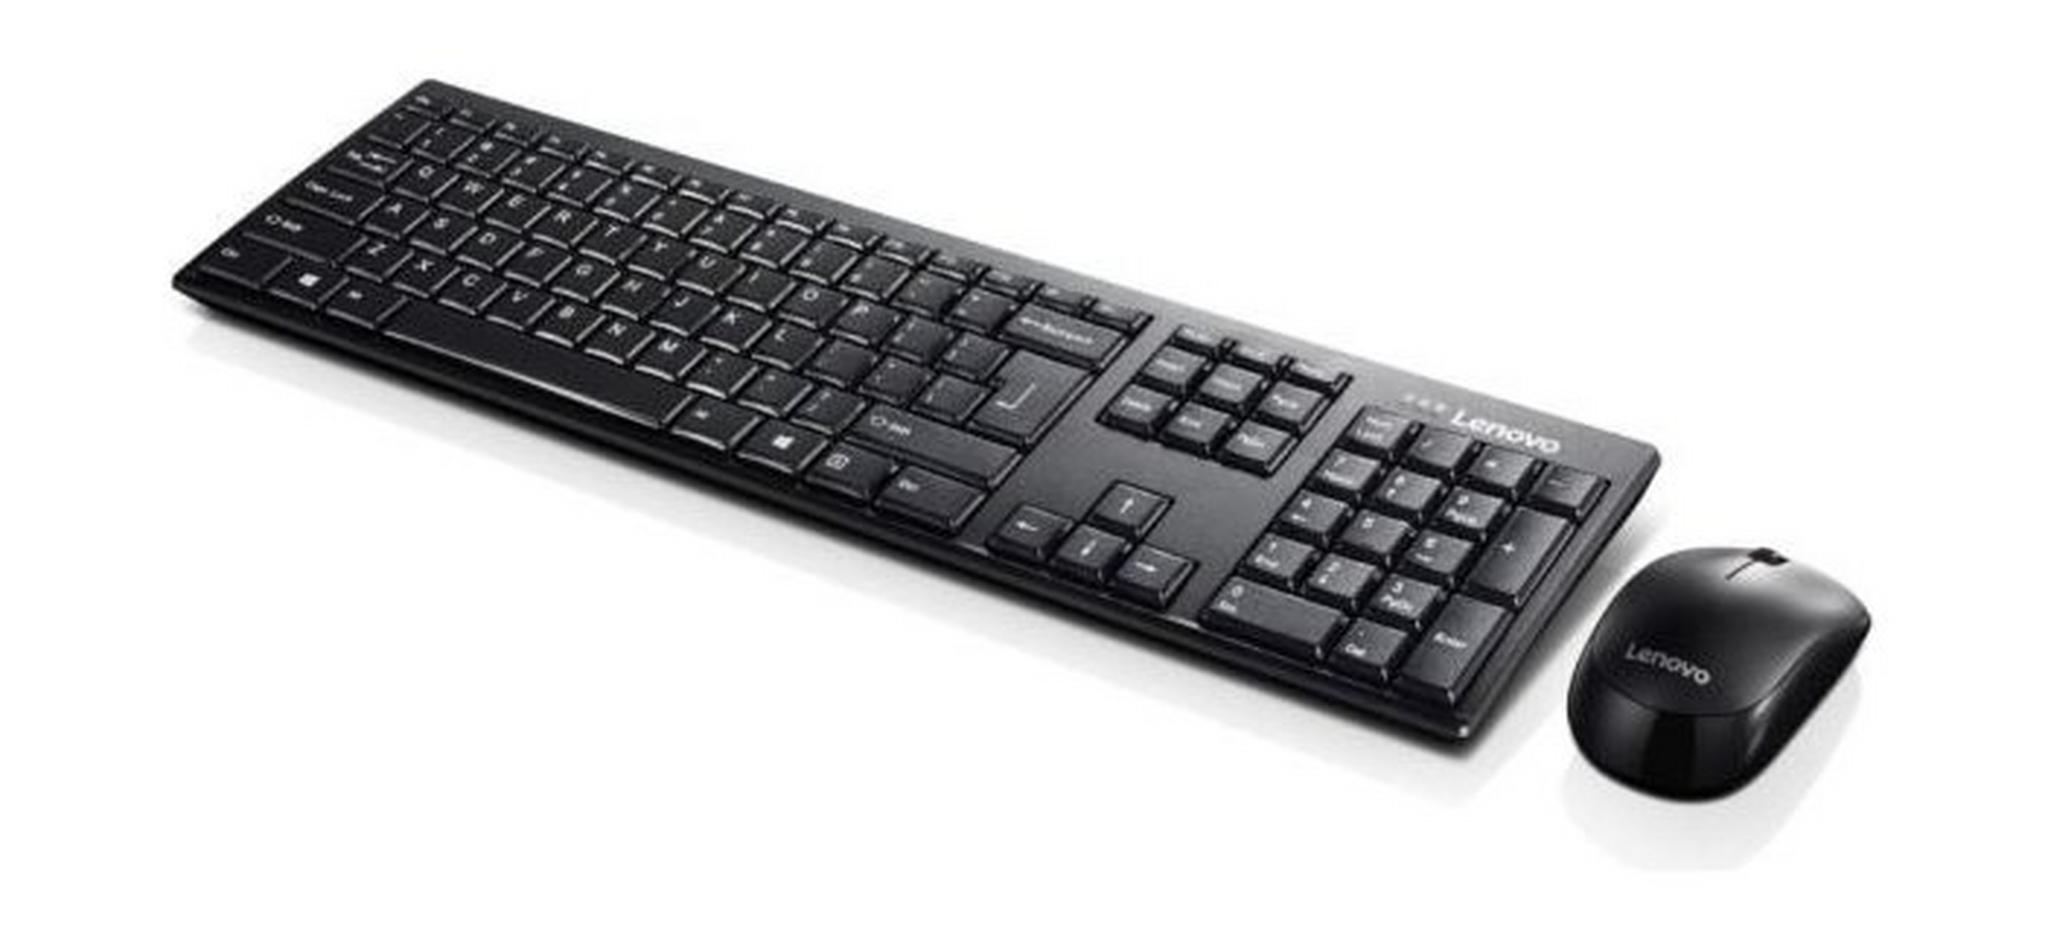 لوحة مفاتيح لاسلكية 100 وماوس كومبو من لينوفو (GX30S99500)  - أسود